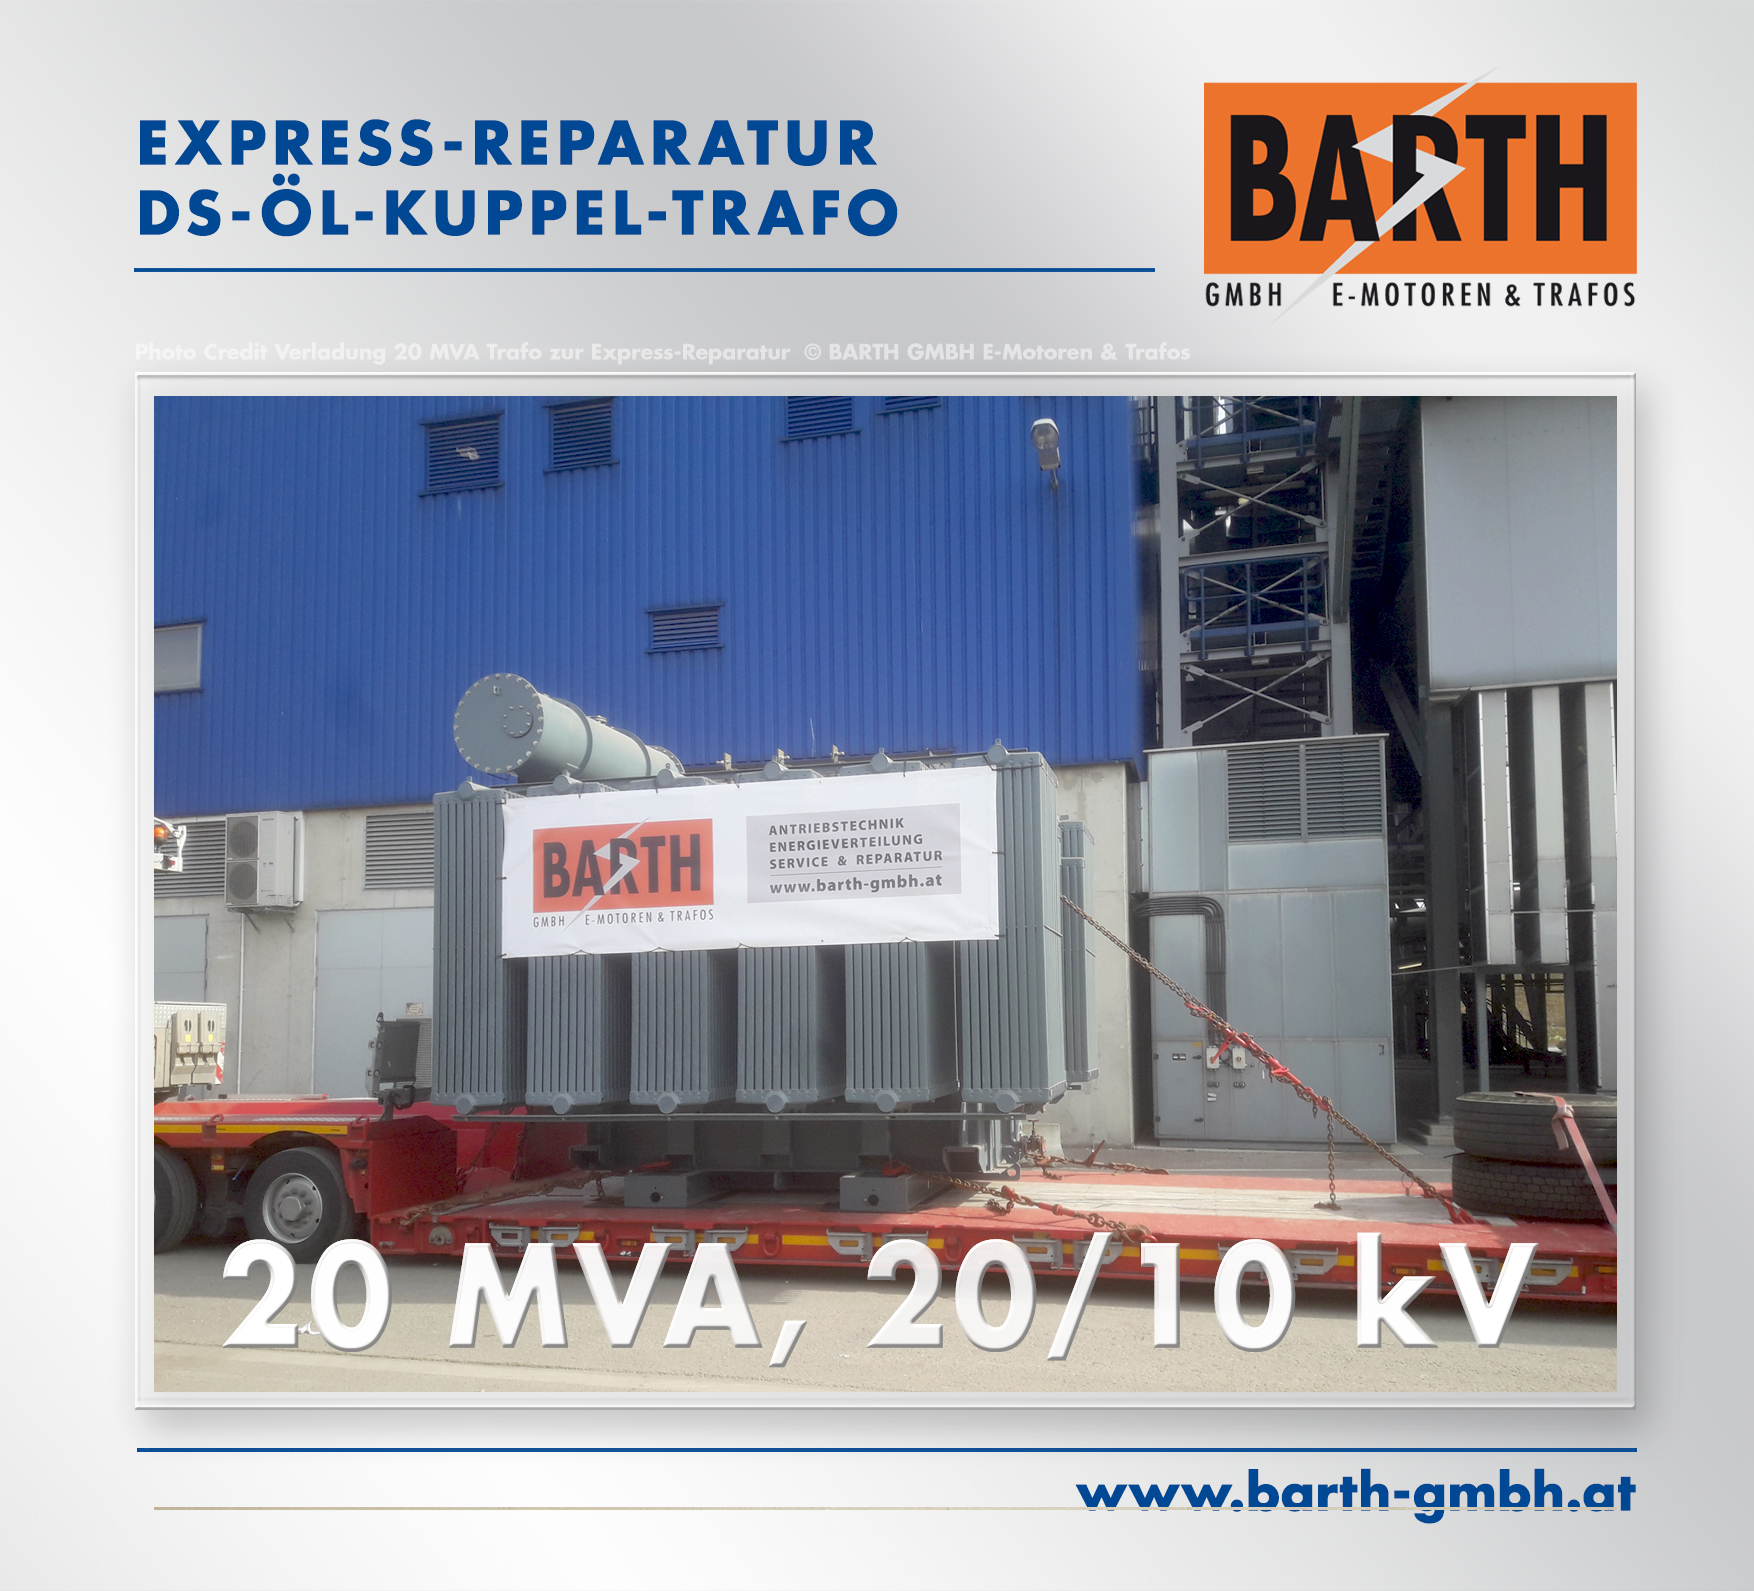 Express-Reparatur eines 20 MVA-Kuppel-Trafos (Tausch des Umstellers)